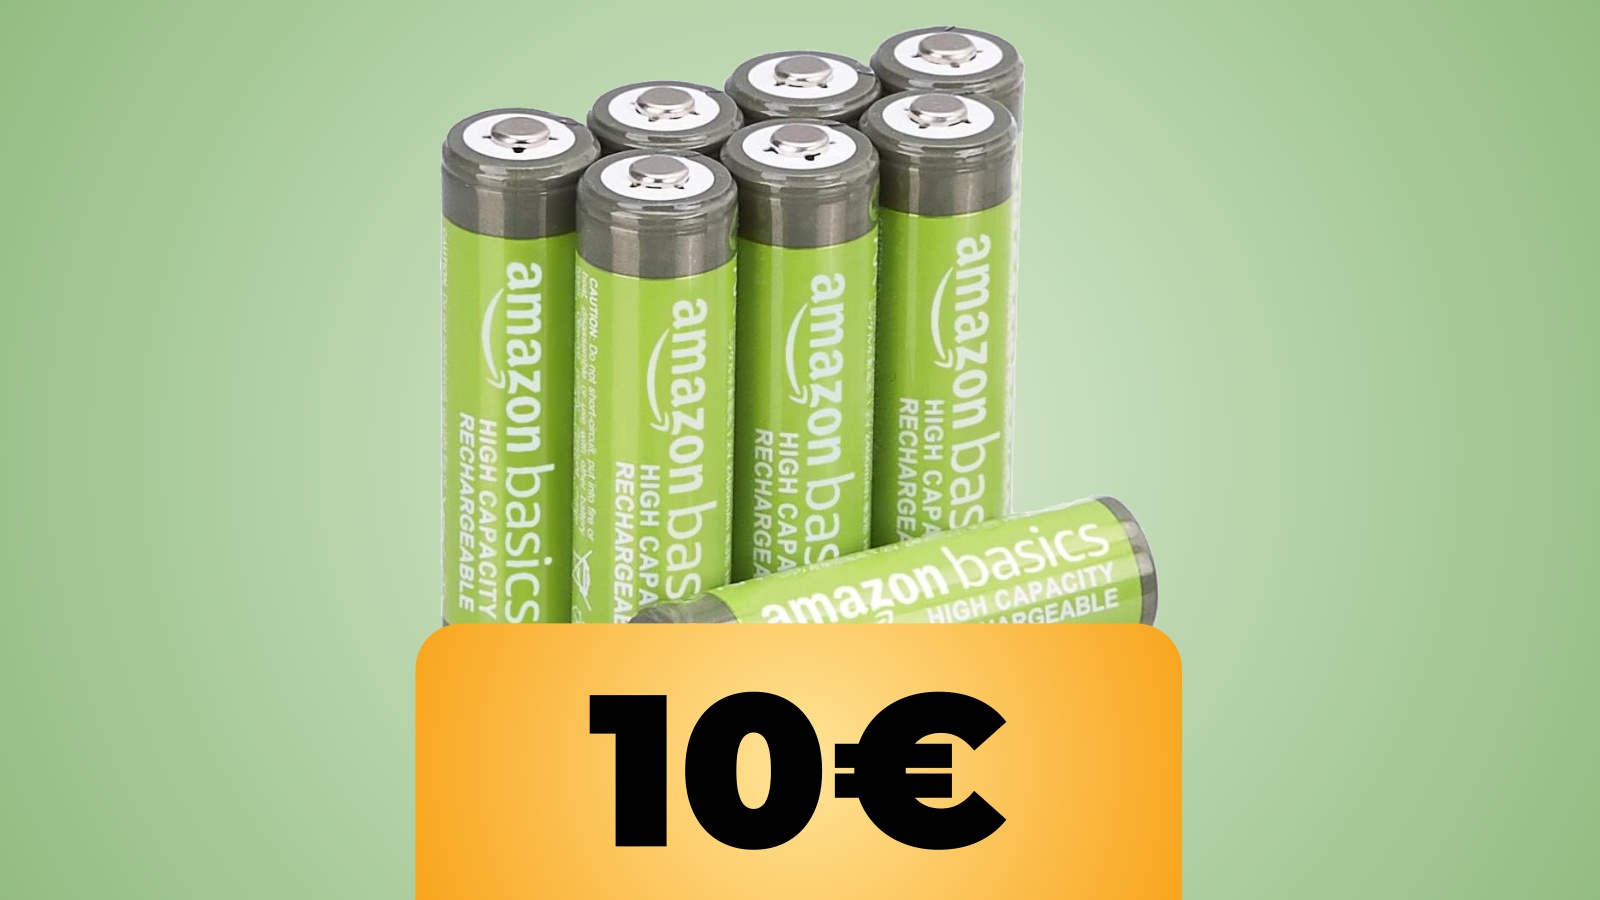 Batterie AA ricaricabili Amazon Basics in sconto: l'offerta di Amazon per il pacco da 8